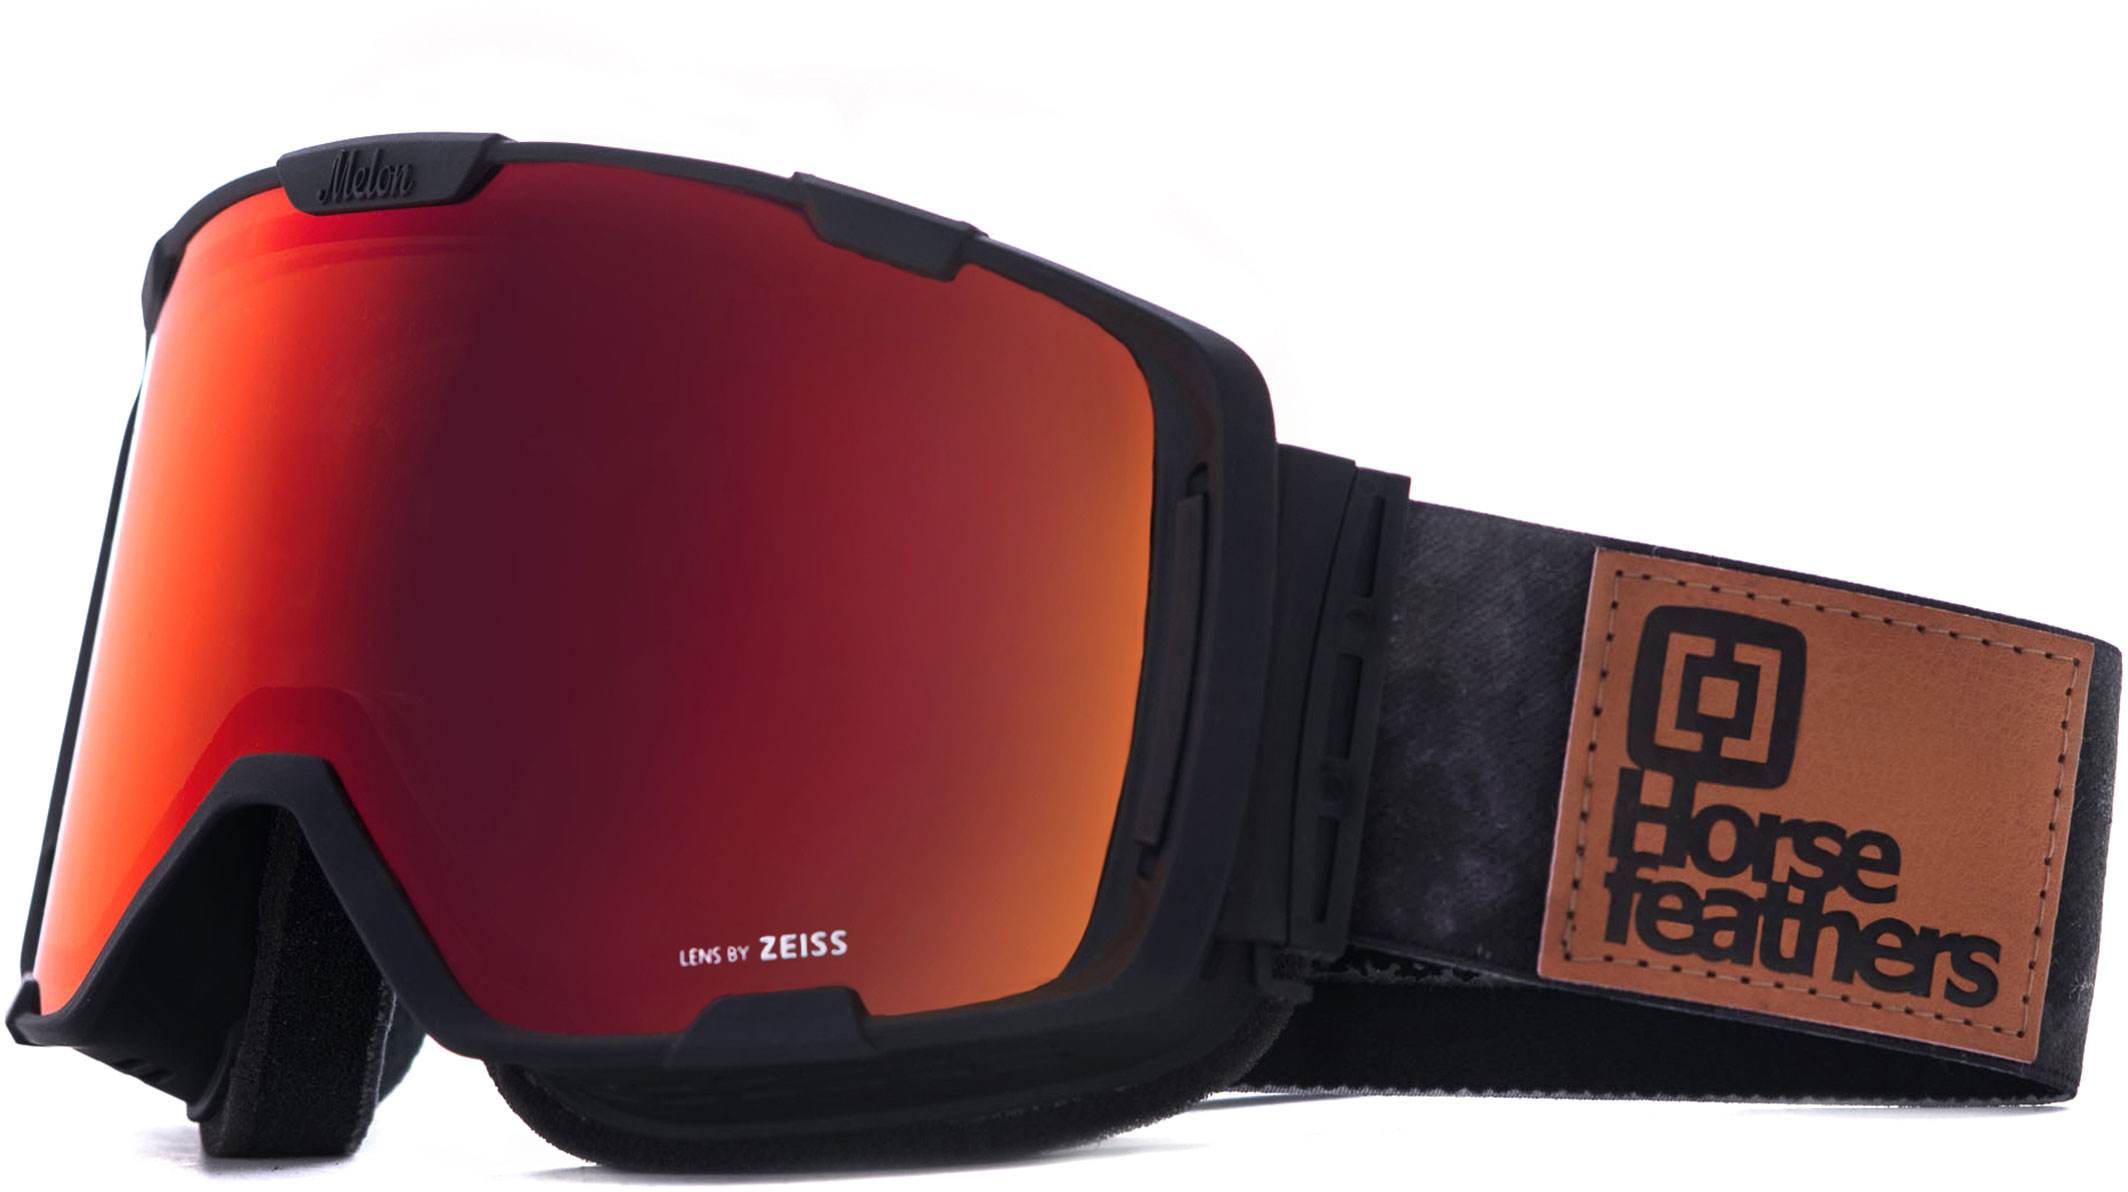 Pánské lyžařské brýle